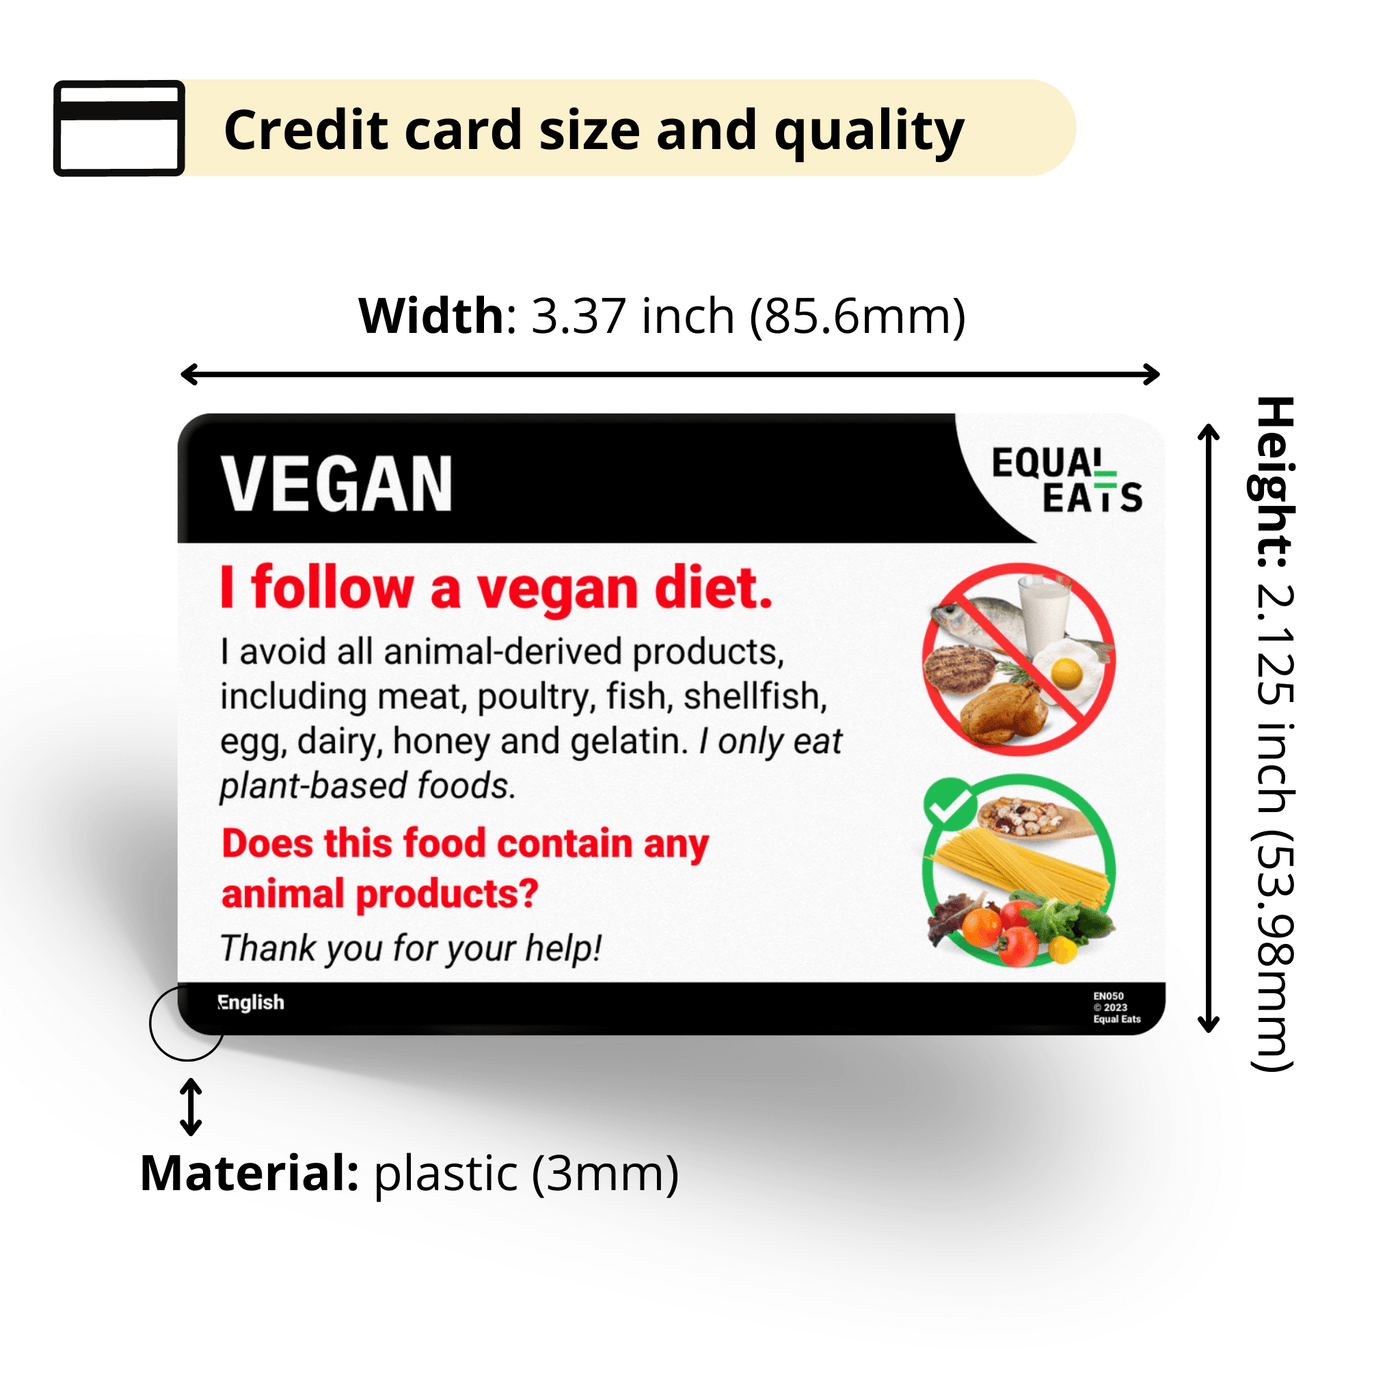 Equal Eats Vegan Diet Translation Card